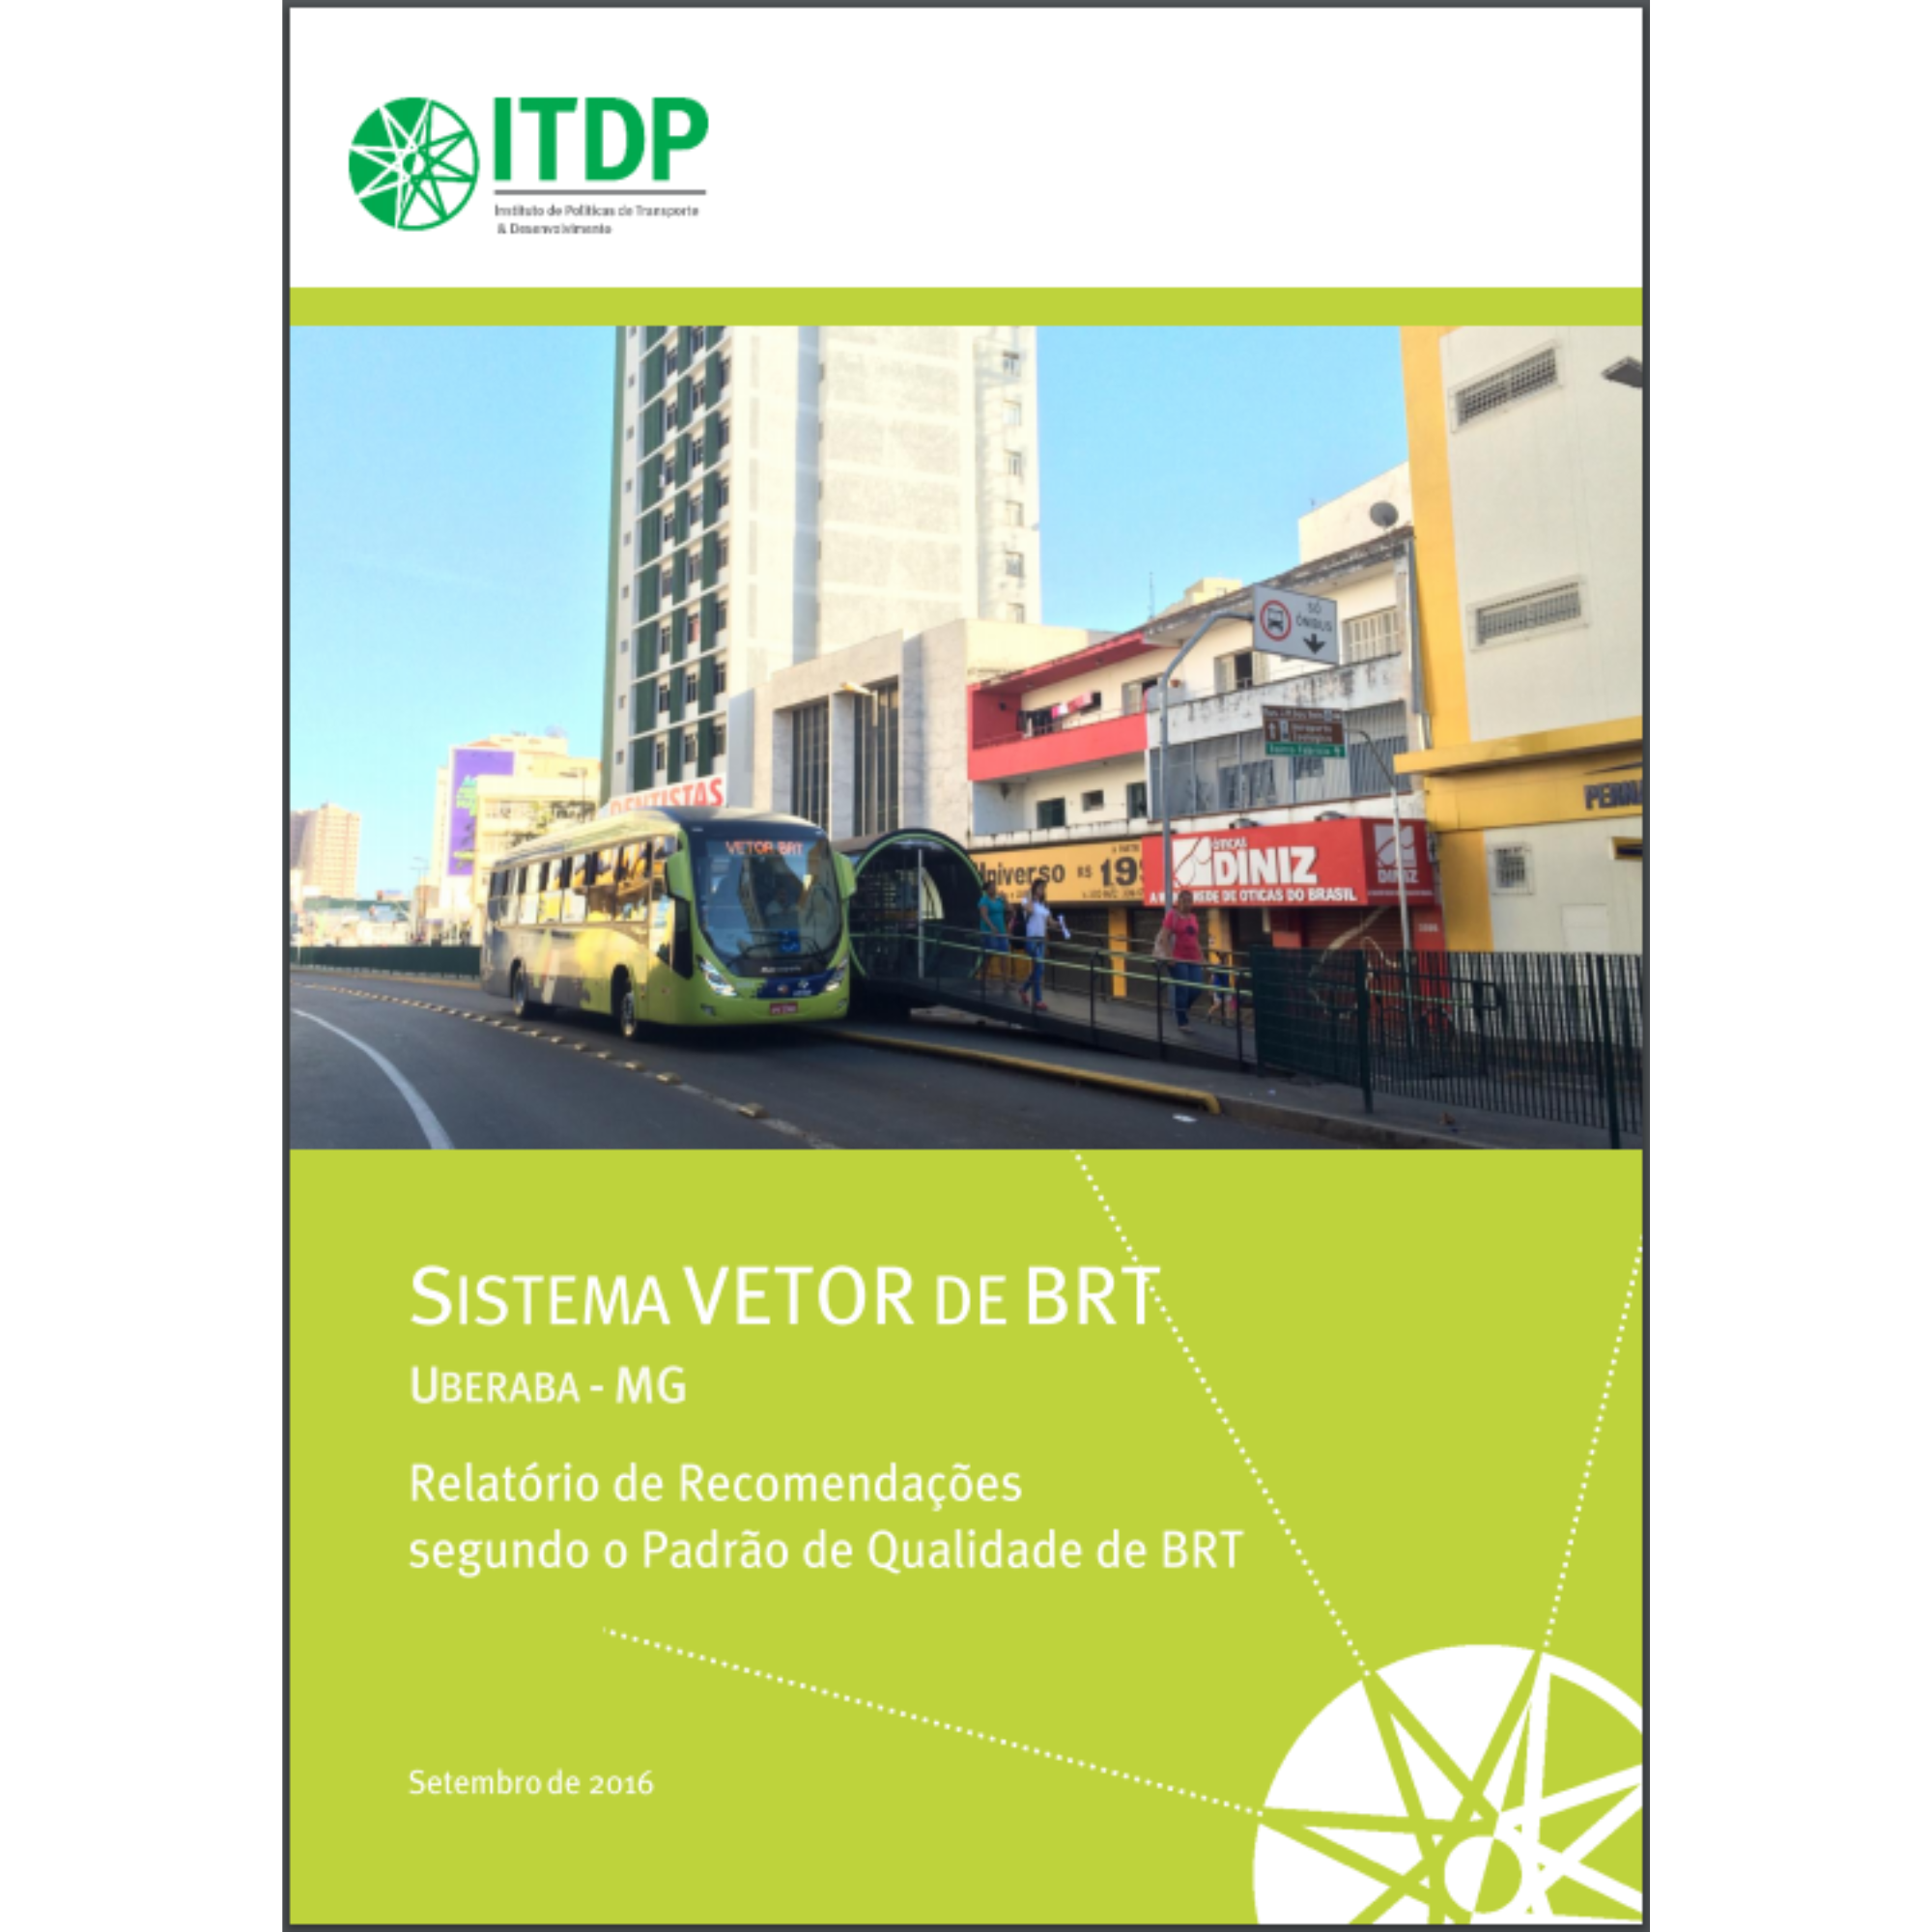 BRT Vetor Uberaba: Relatório de recomendações segundo o Padrão de Qualidade BRT